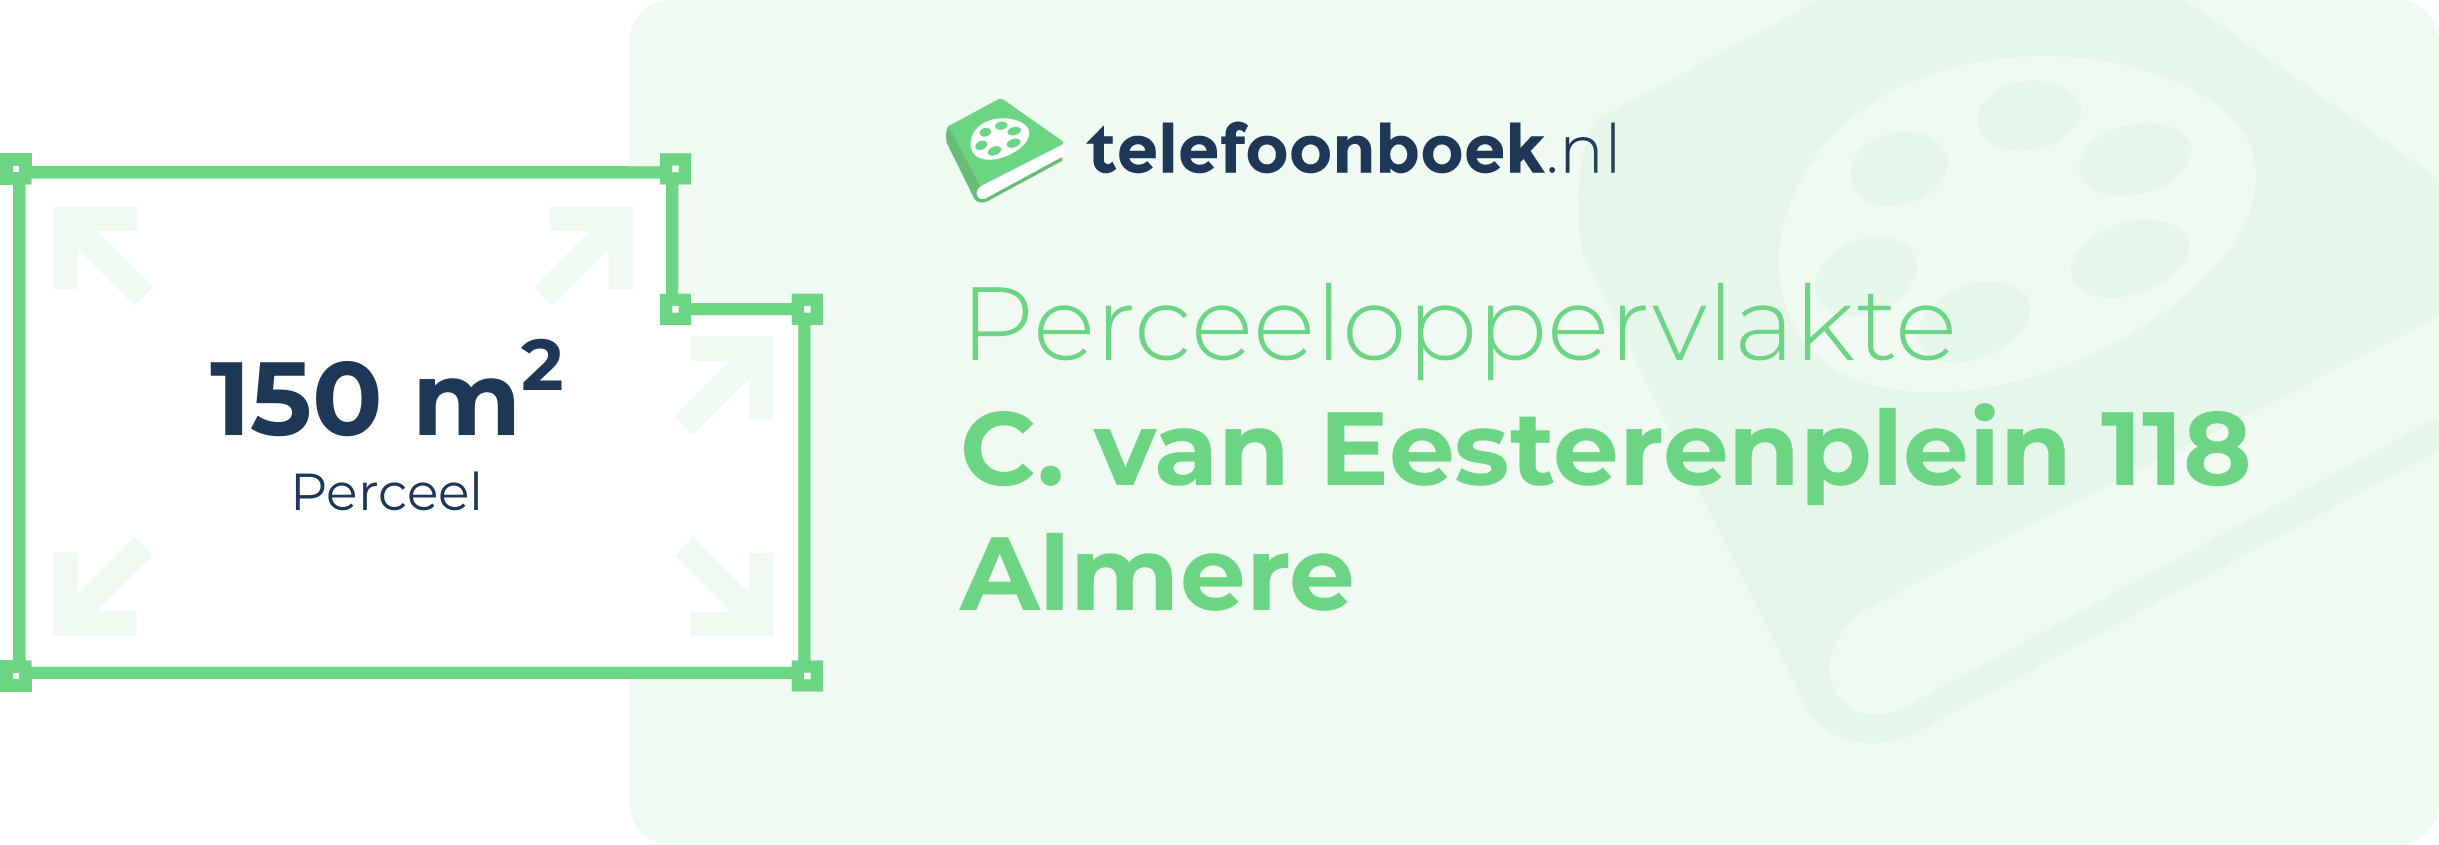 Perceeloppervlakte C. Van Eesterenplein 118 Almere